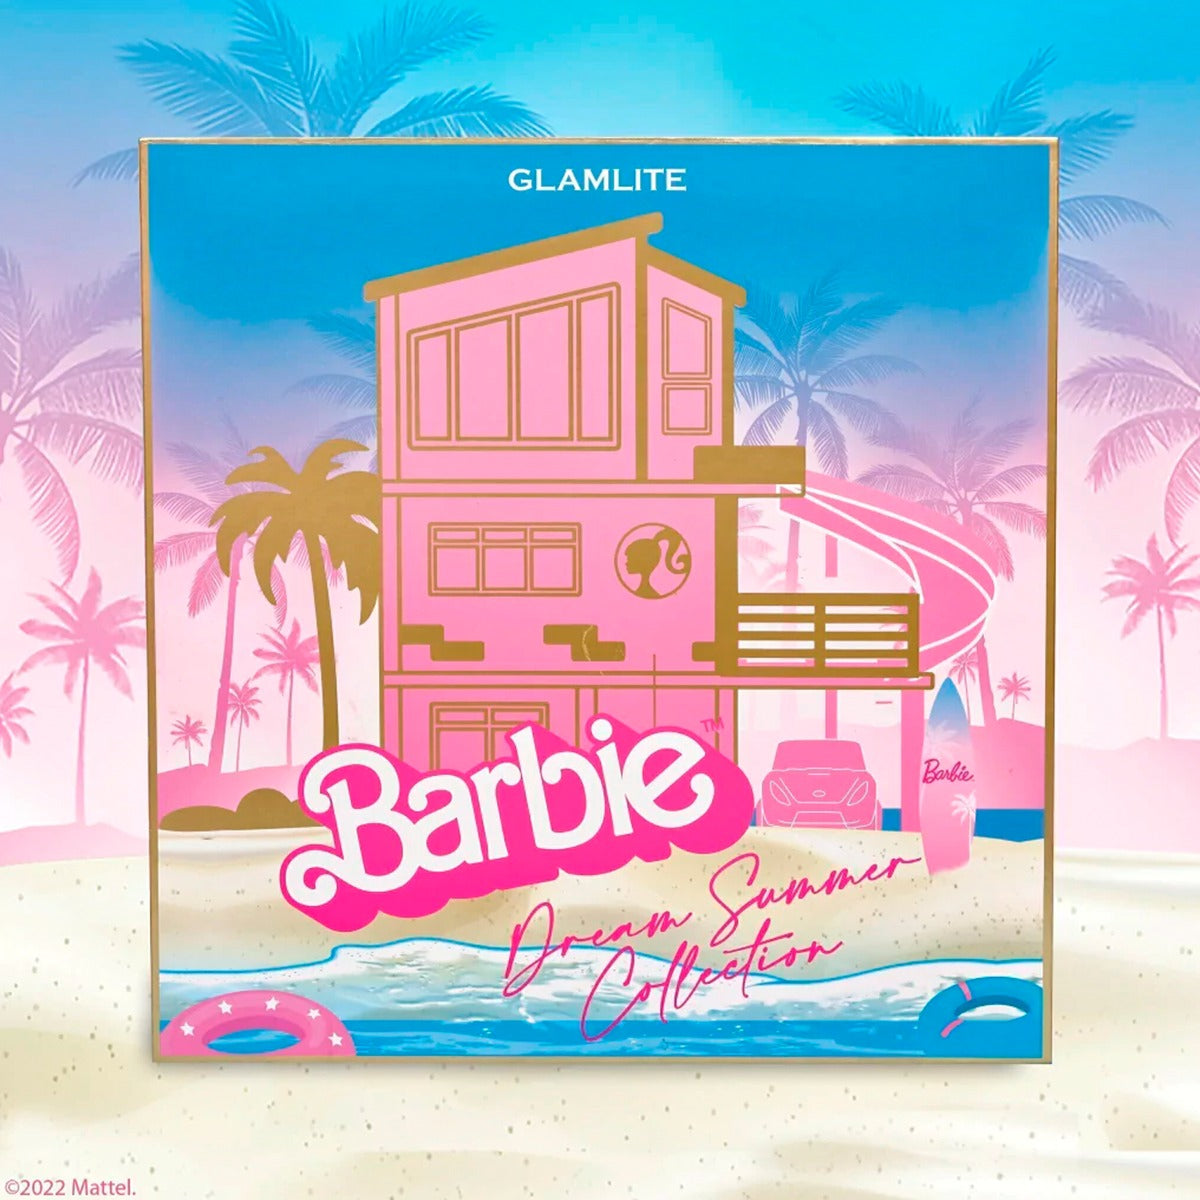 PR Box Barbie X Glamlite